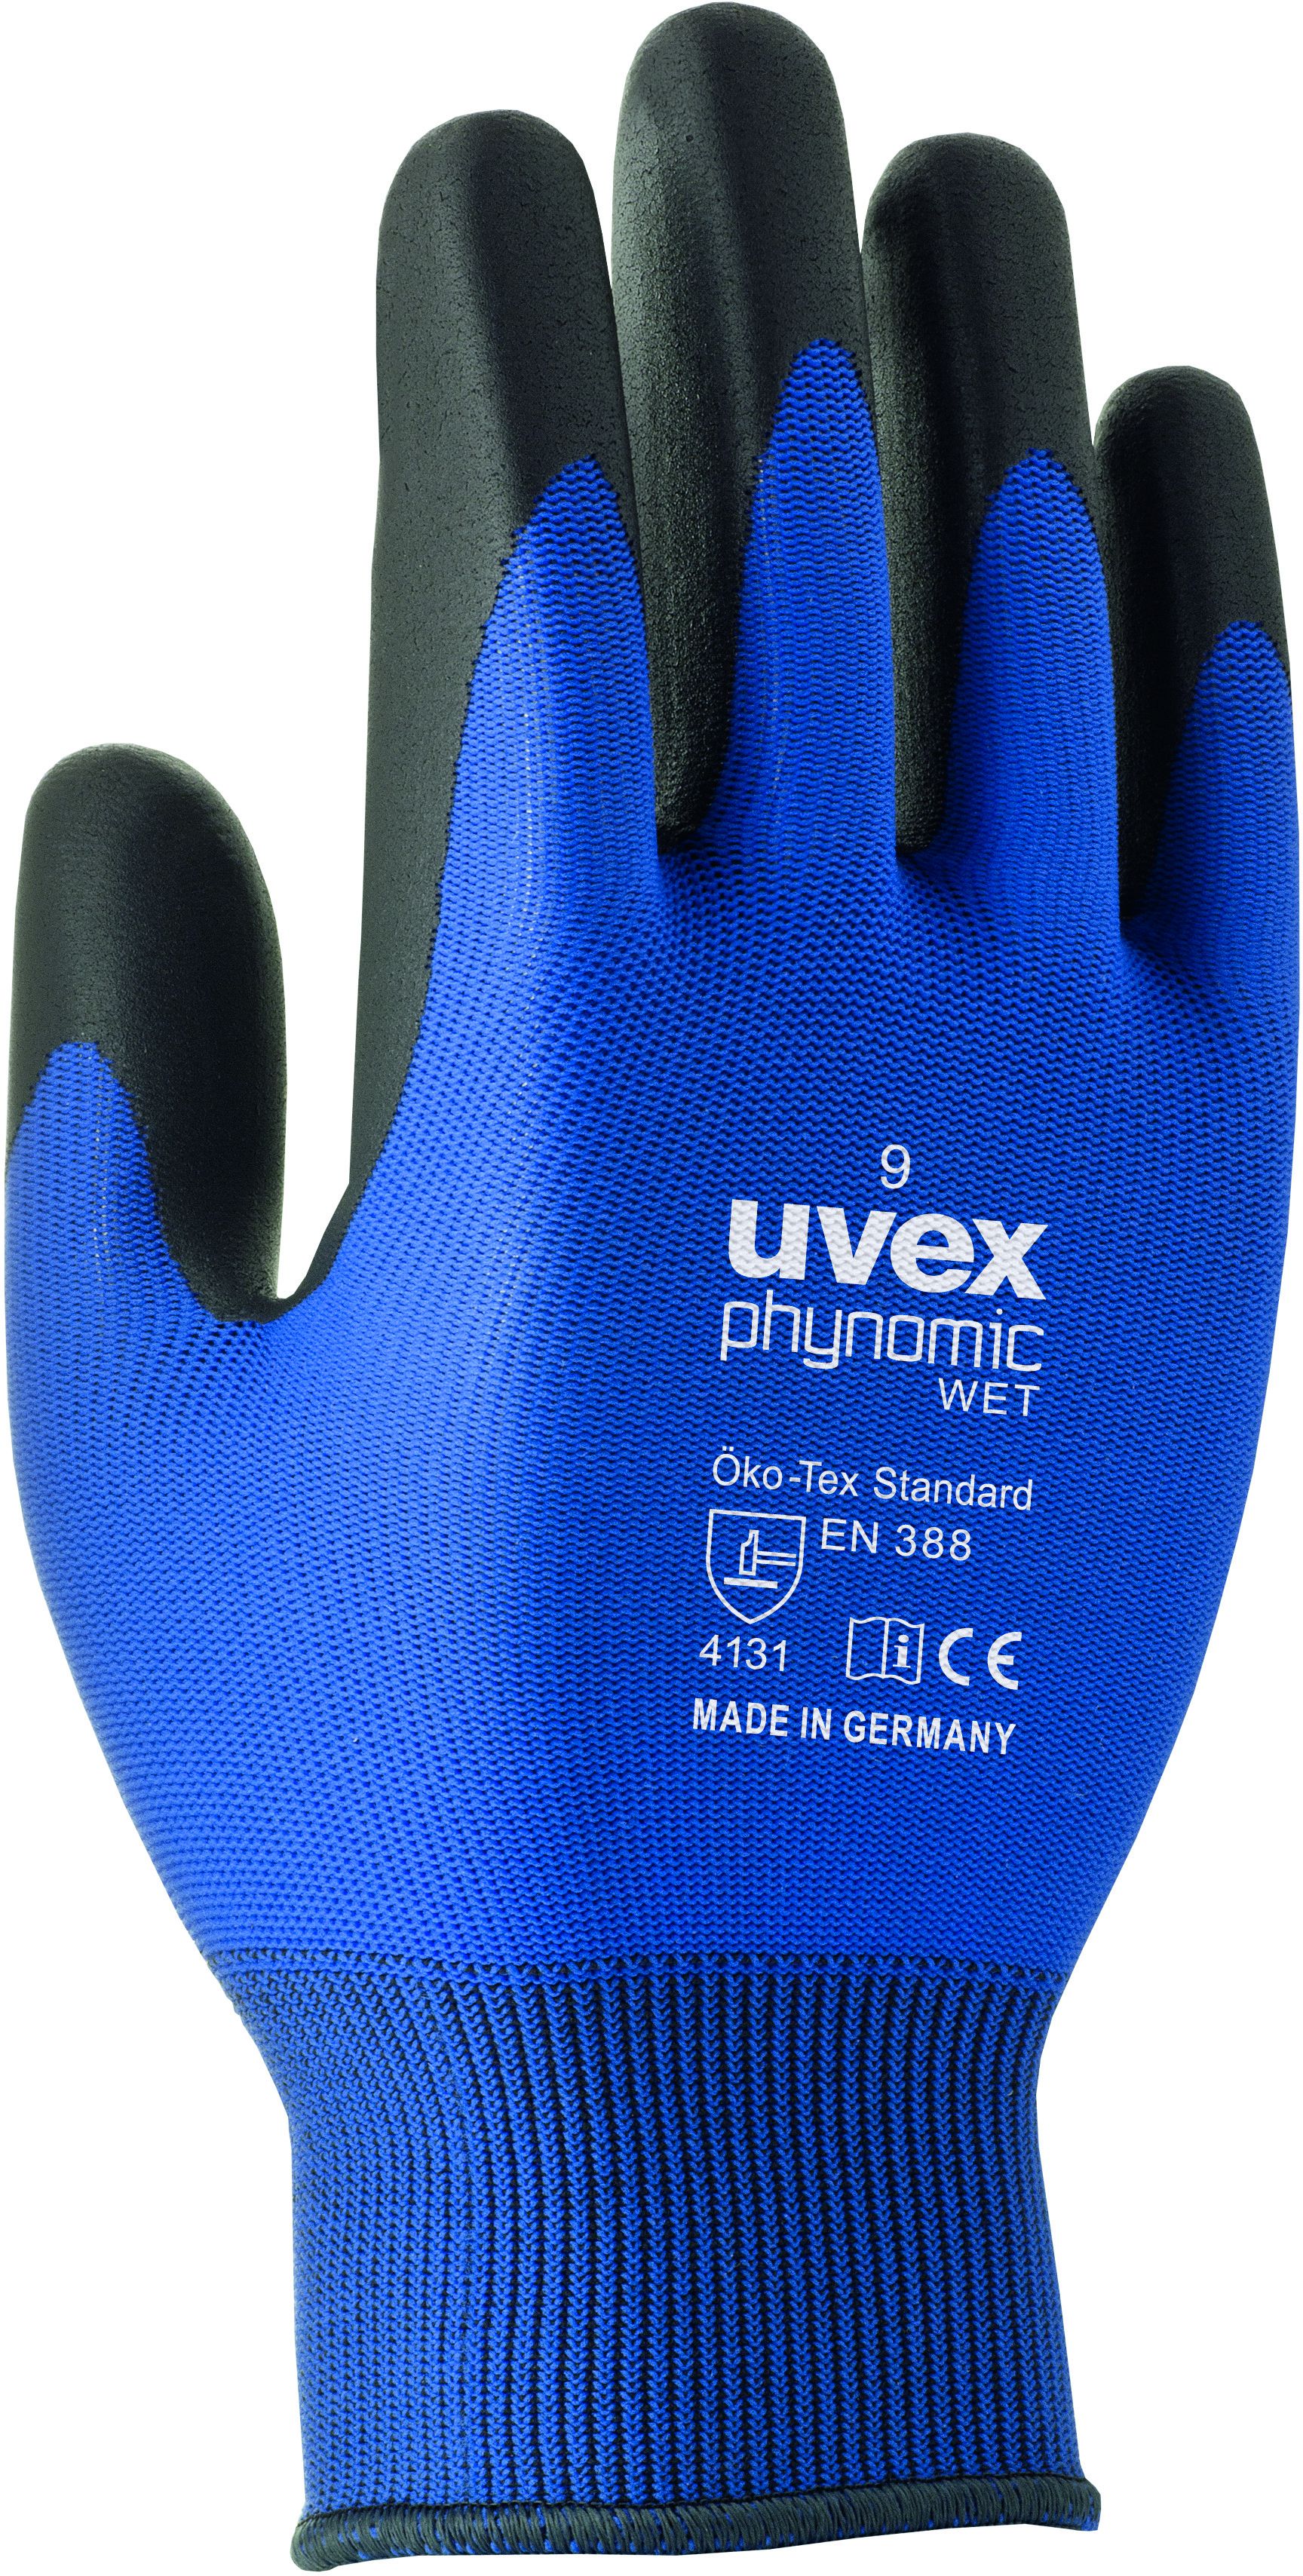 UVEX Arbeitshandschuh phynomic WET Gr. 9, blau/anthrazit, Art. 60060 - Arbeitsschutz